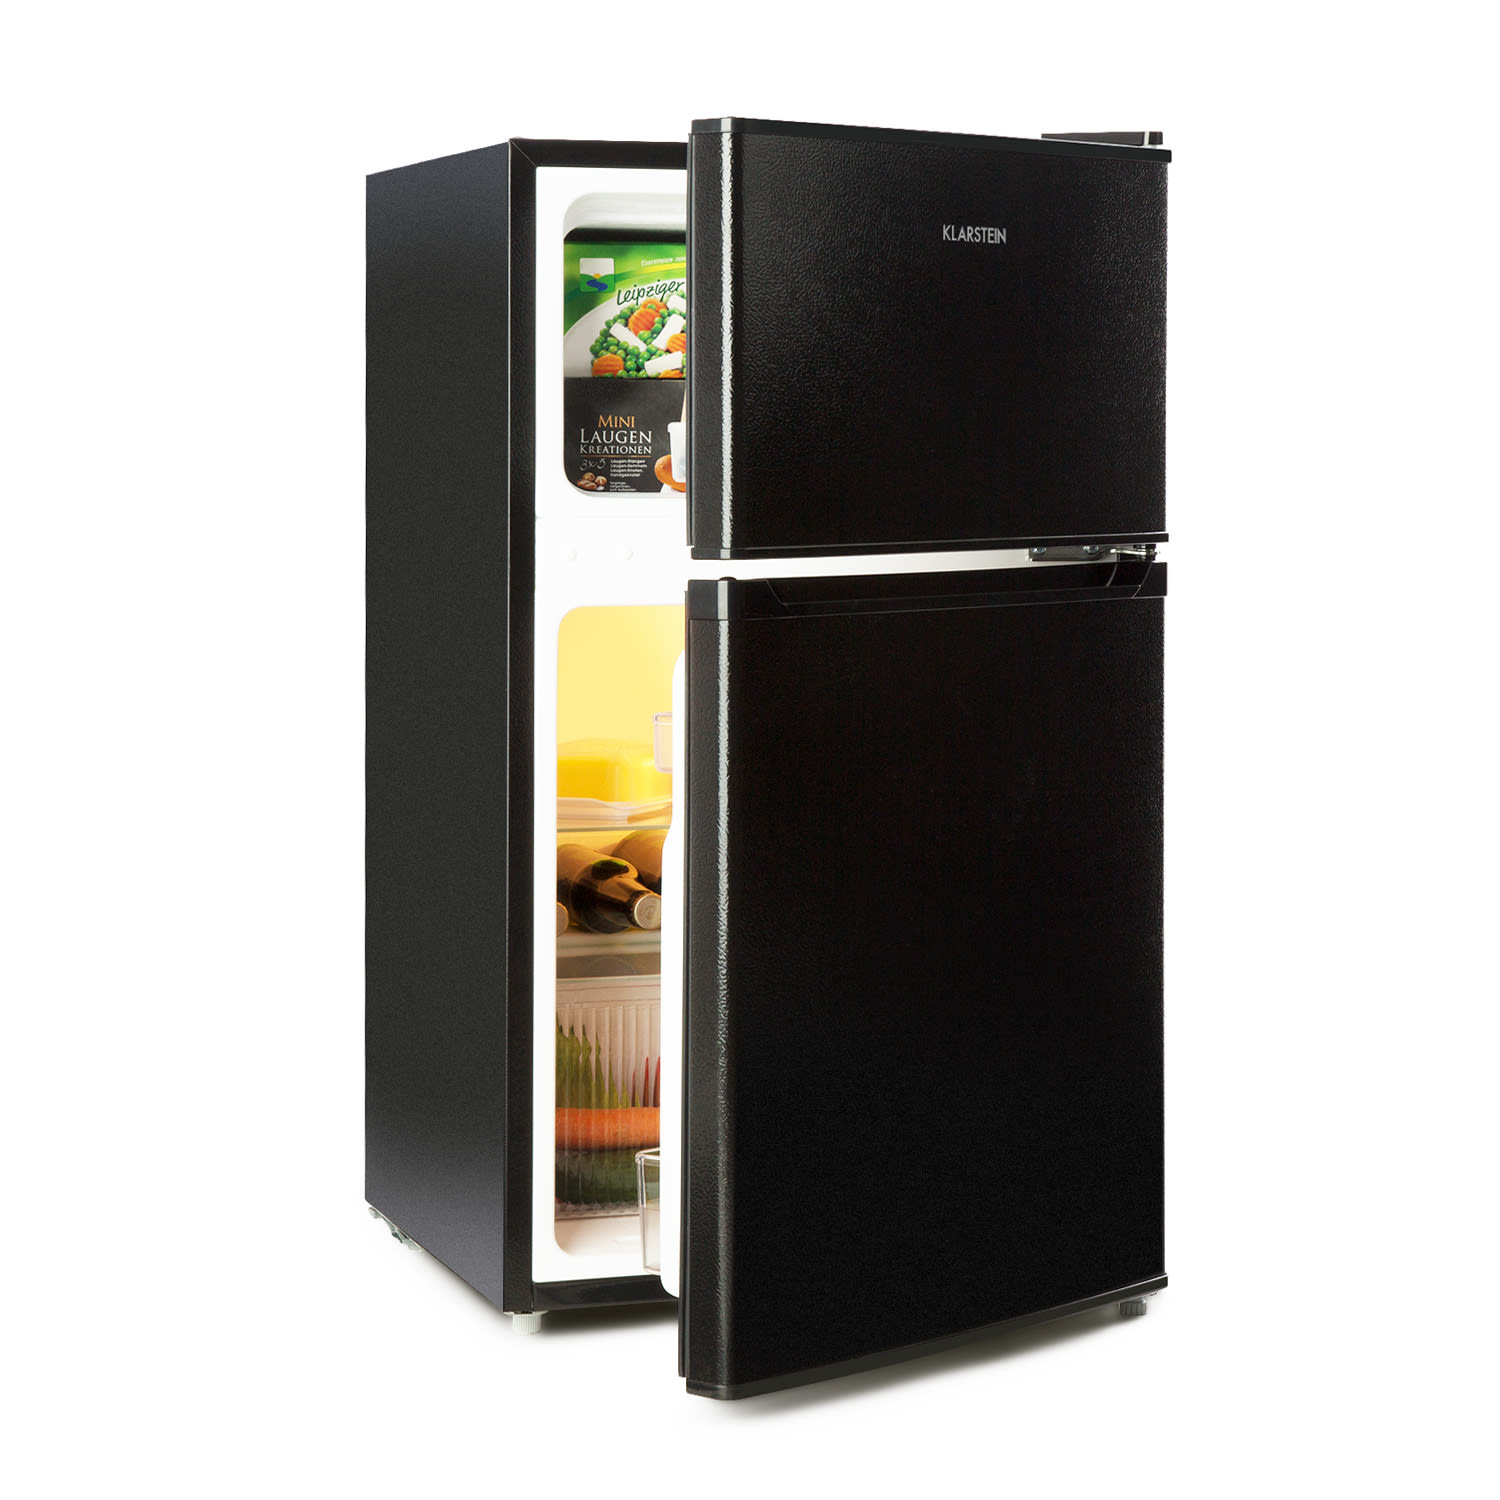 Klarstein Big Daddy Cool, frigider cu congelator, 61/26 litri, 40 dB, F, negru